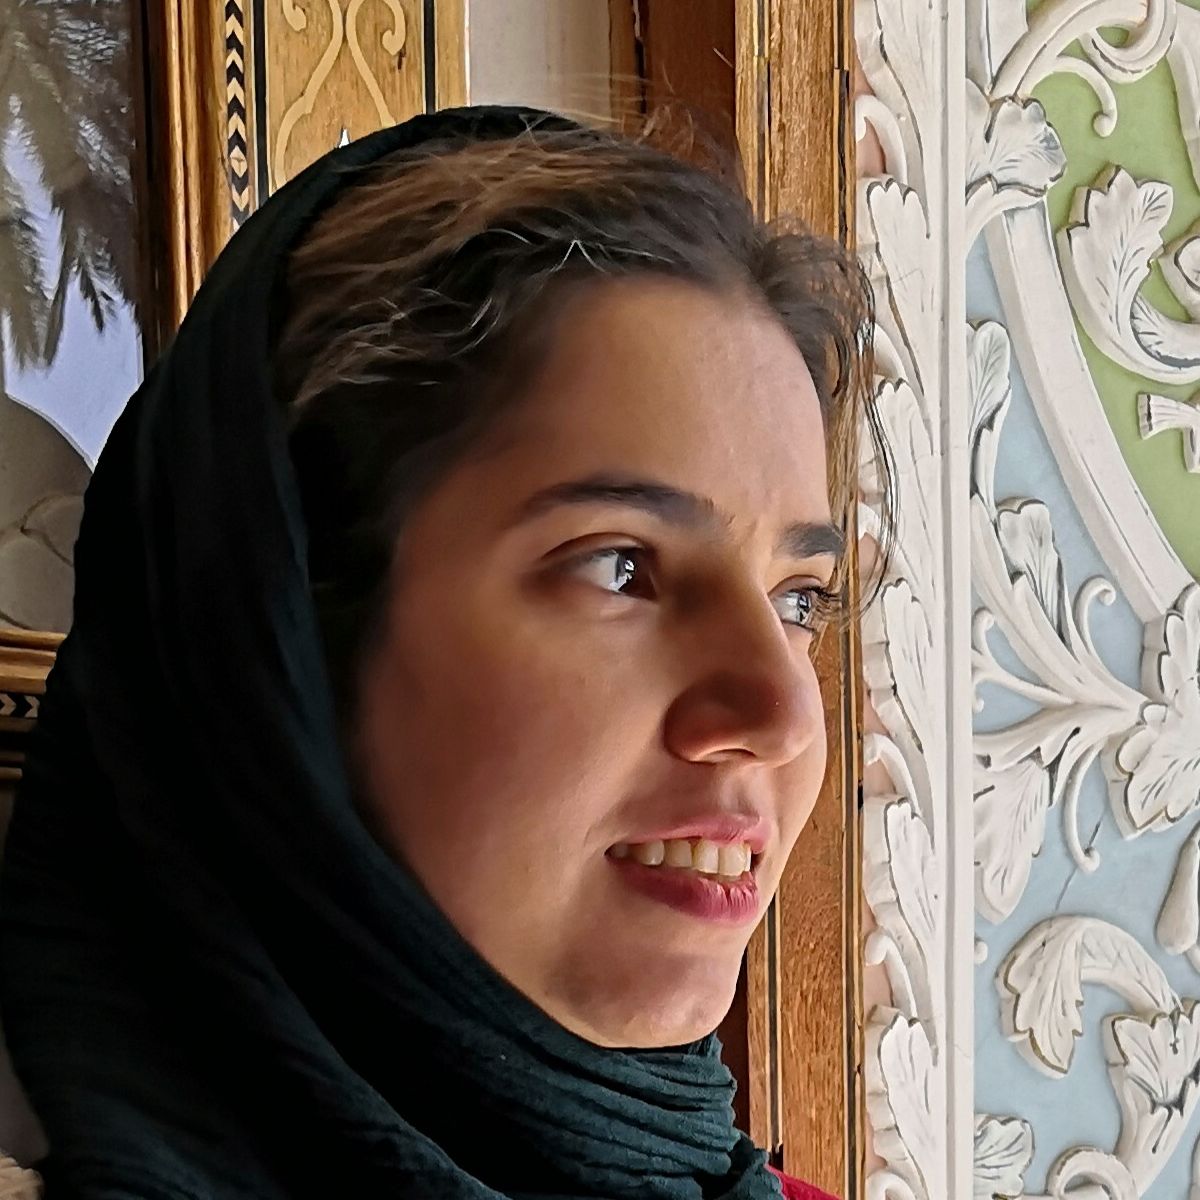 Zohreh Mohammadi